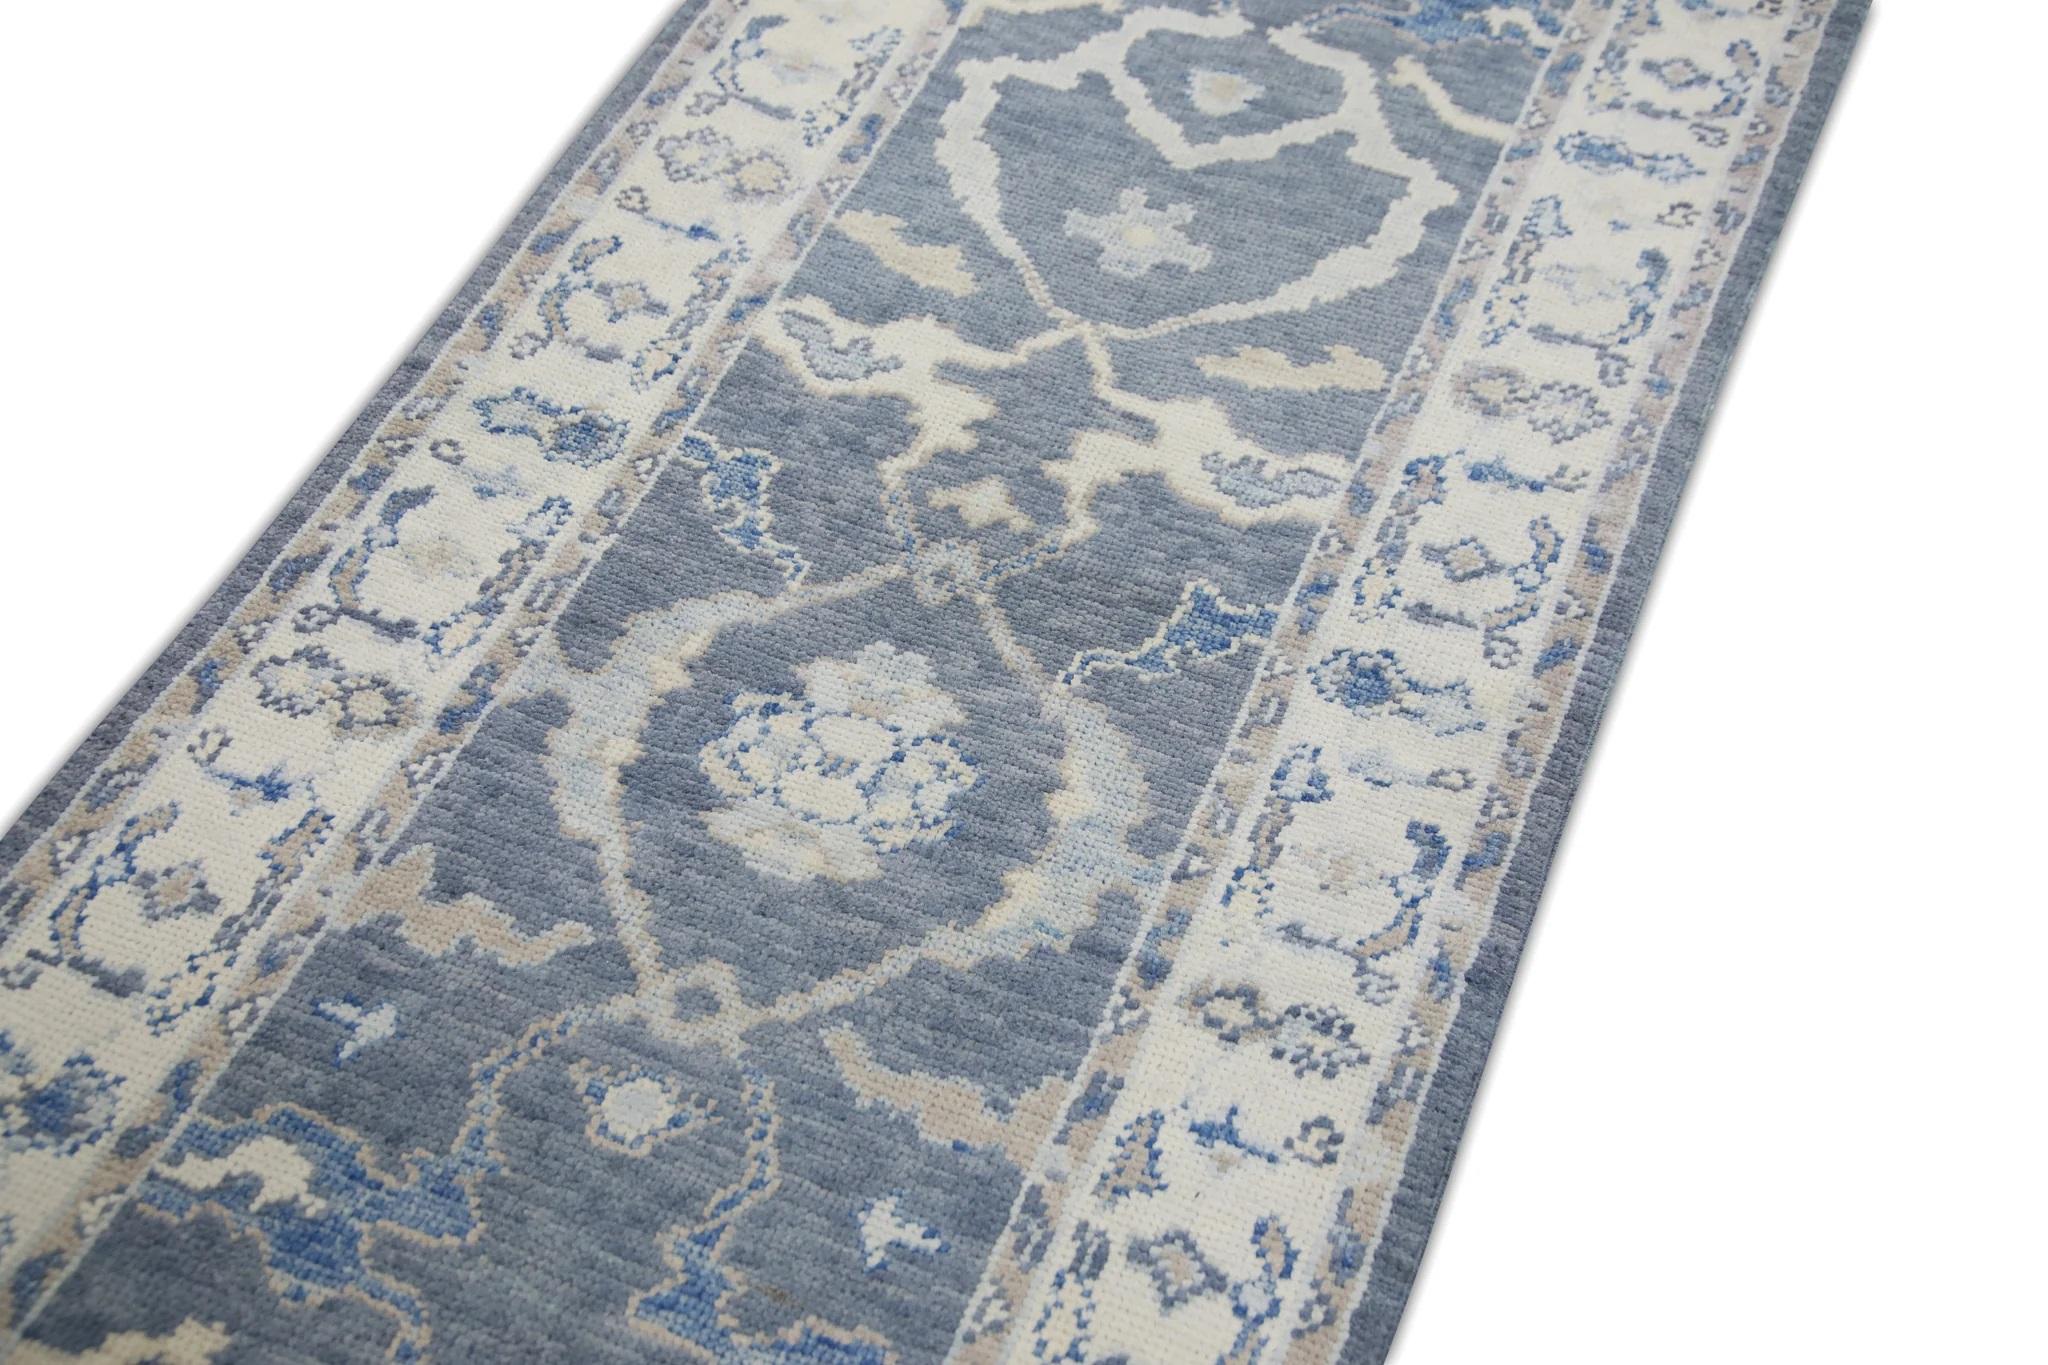 Dieser türkische Oushak-Teppich ist ein atemberaubendes Kunstwerk, das von erfahrenen Kunsthandwerkern mit traditionellen Techniken handgewebt wurde. Der Teppich weist komplizierte Muster und eine weiche Farbpalette auf, die durch die Verwendung